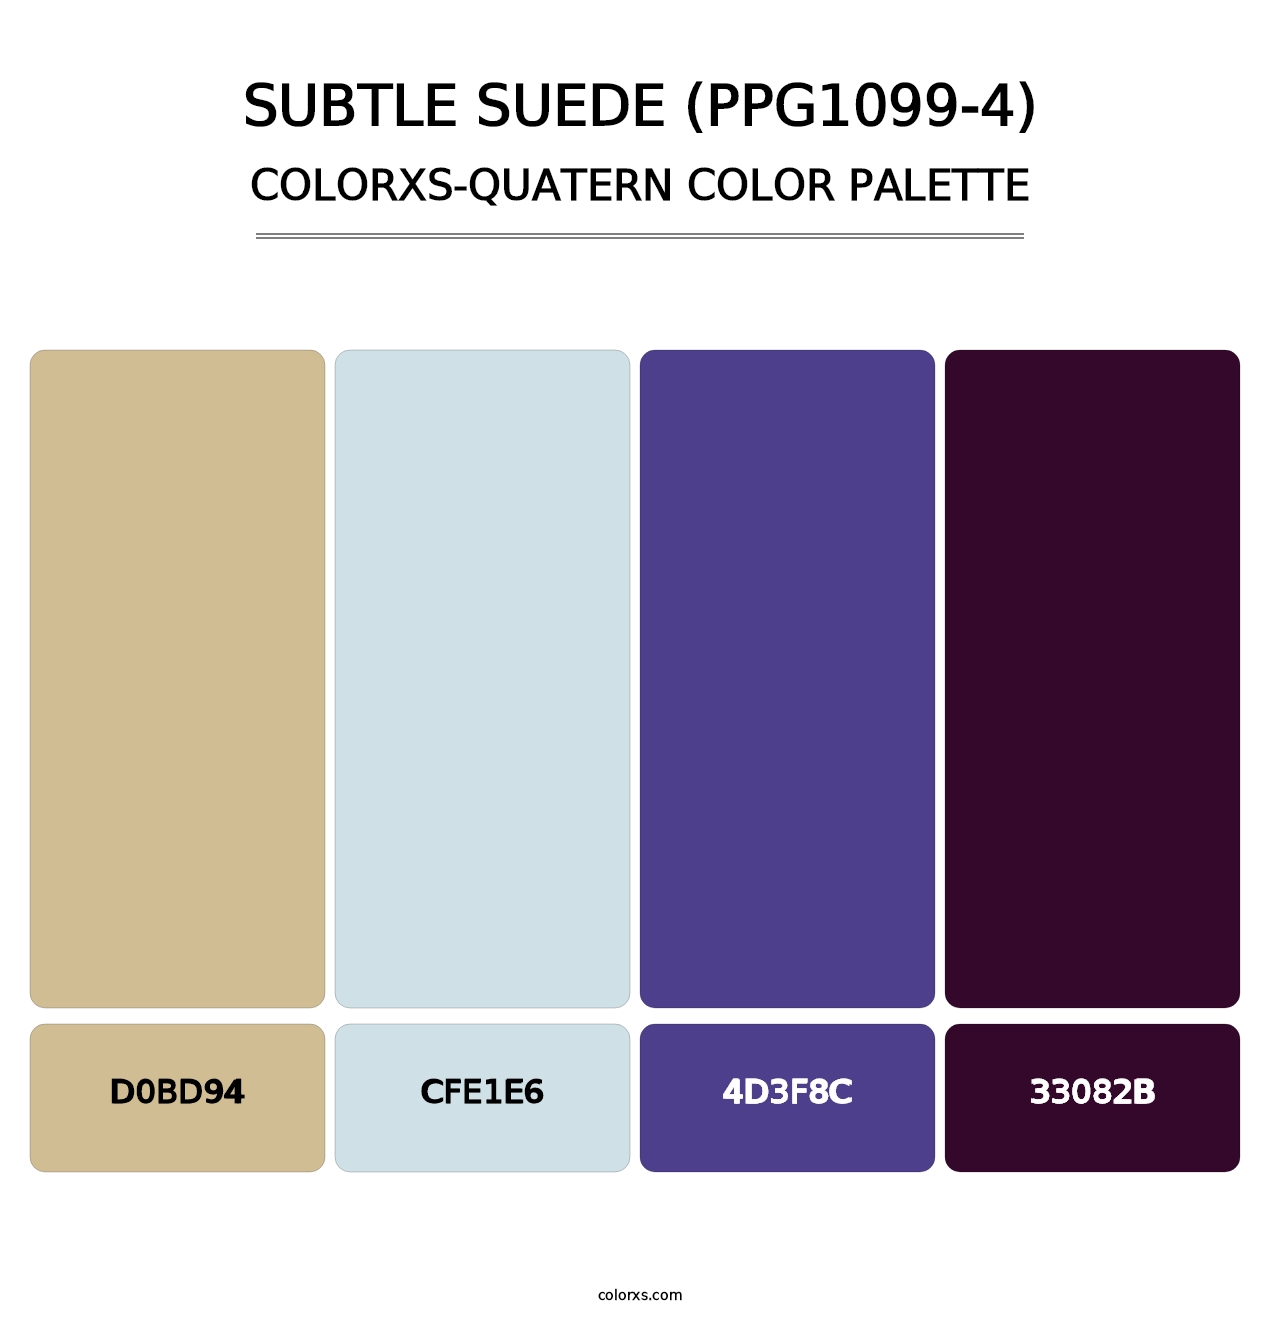 Subtle Suede (PPG1099-4) - Colorxs Quatern Palette